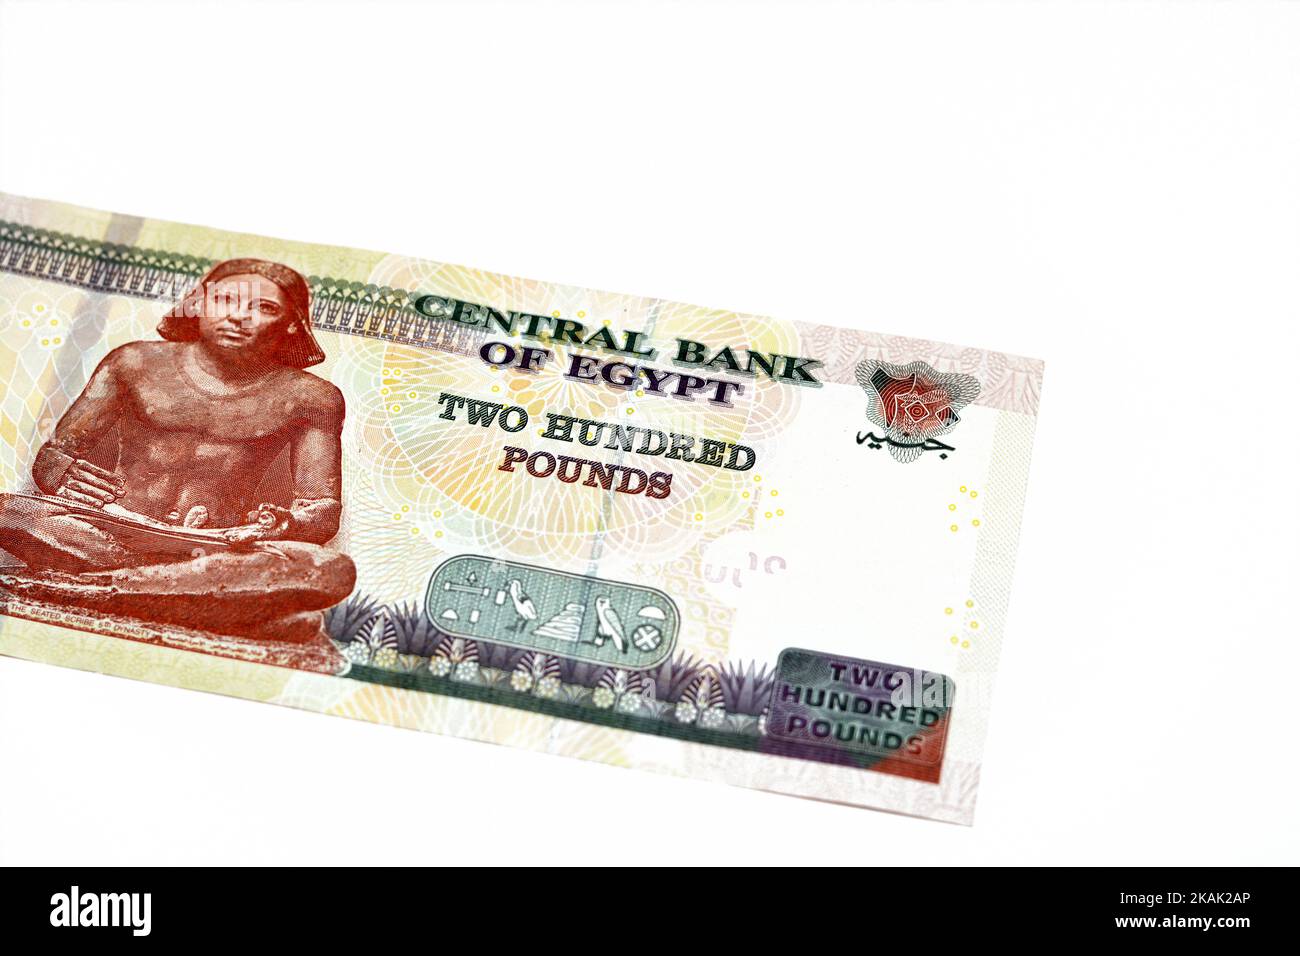 Lato opposto di 200 LE EGP duecento sterline egiziane denaro contante banconote serie 2022 caratteristiche lo scriba seduto dell'antico Egitto, fuoco selettivo di Foto Stock